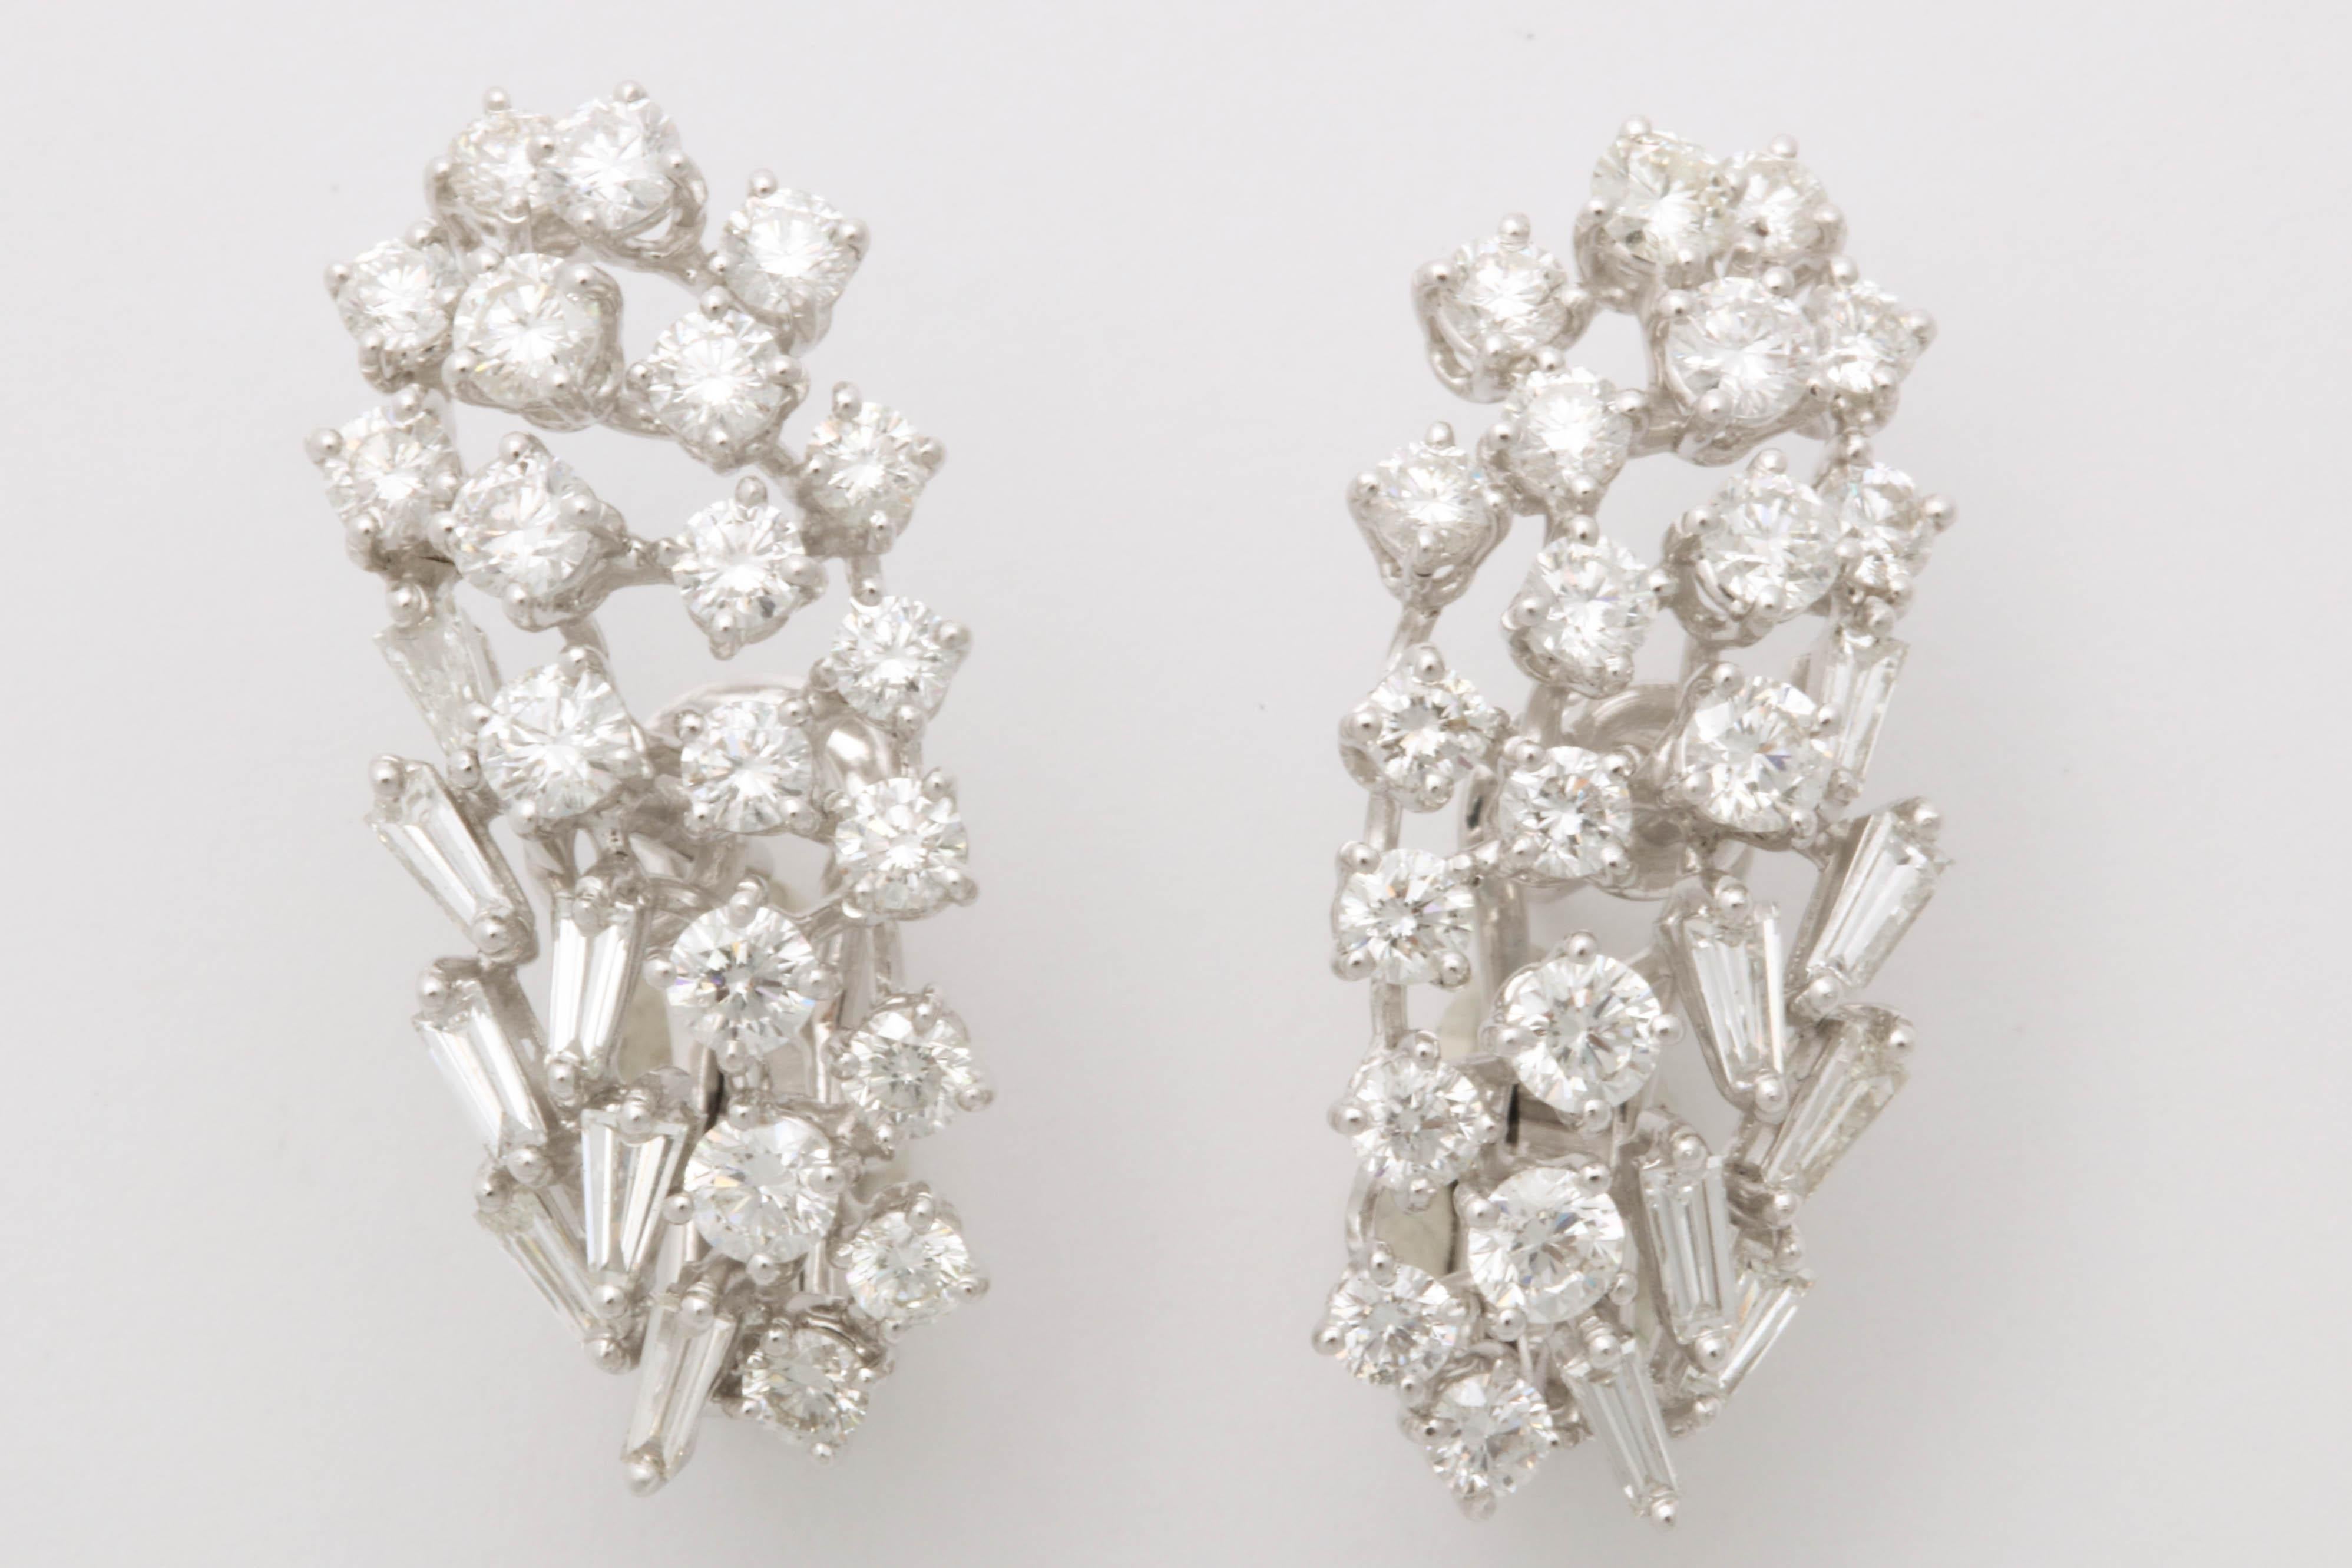 
Un design unique de diamants blancs ronds de taille brillant et baguette sertis dans de l'or blanc 18k. 

Conçues pour 